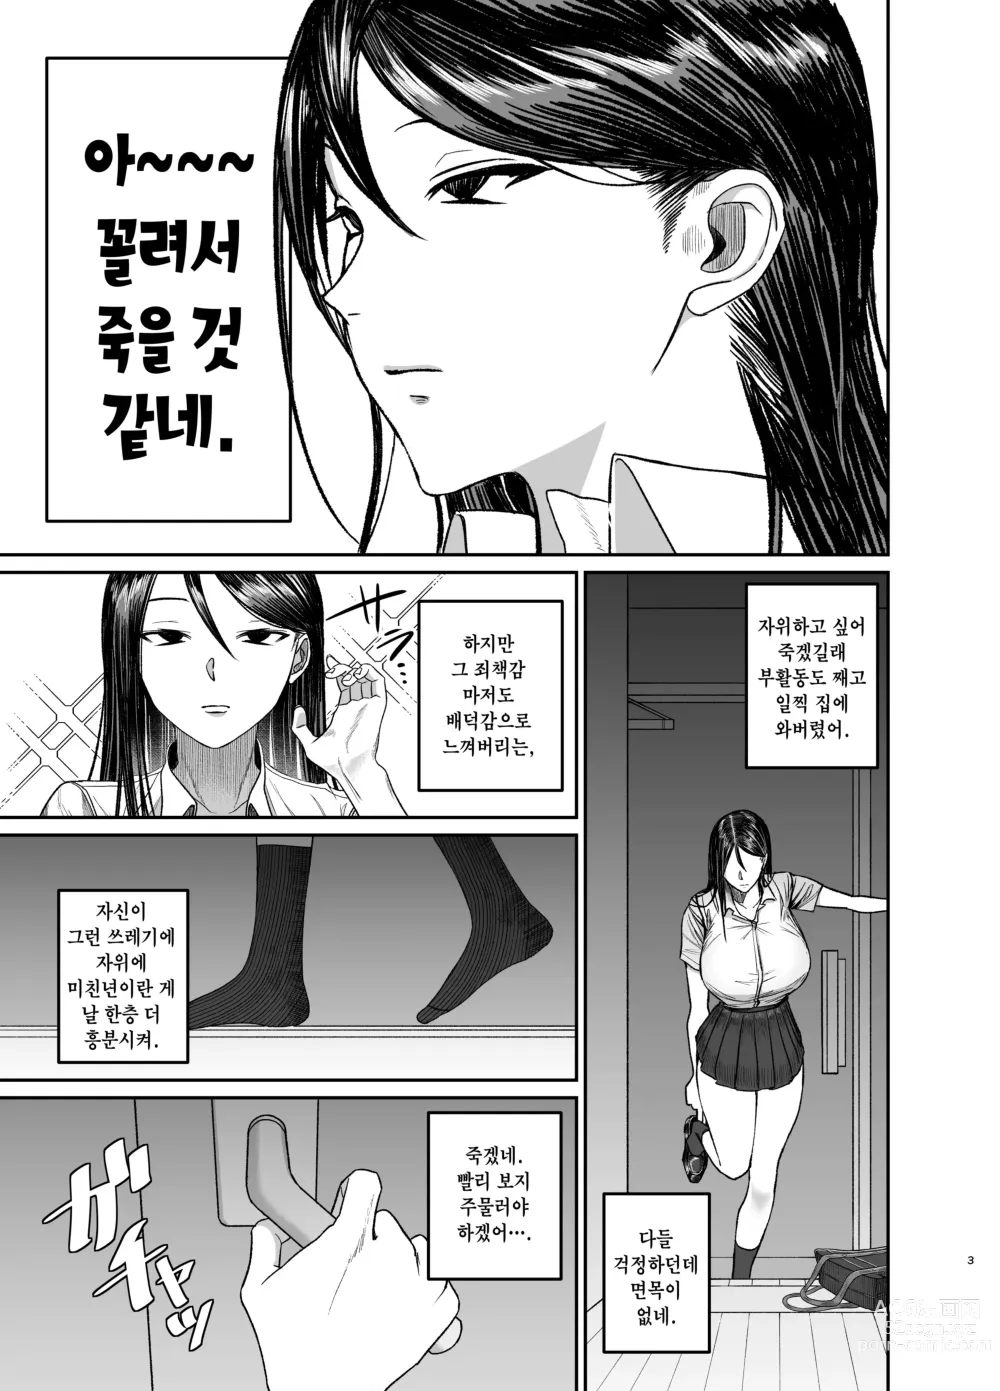 Page 3 of doujinshi 누나로 딸치는 동생과 자위 마려운 누나가 조우한 결과